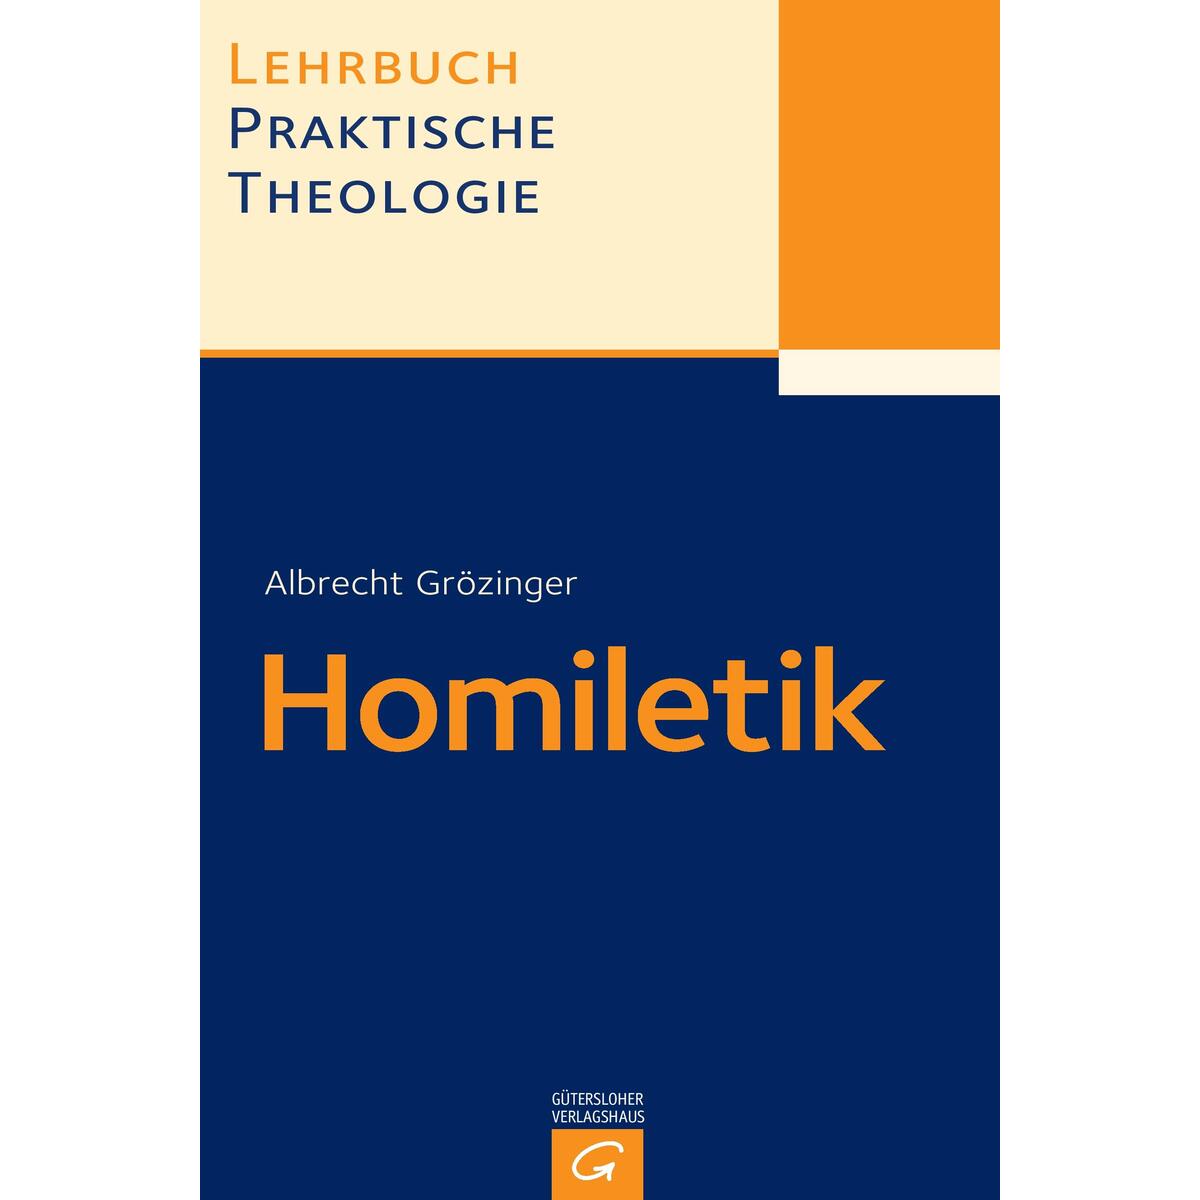 Lehrbuch Praktische Theologie. Band 2. Homiletik von Guetersloher Verlagshaus